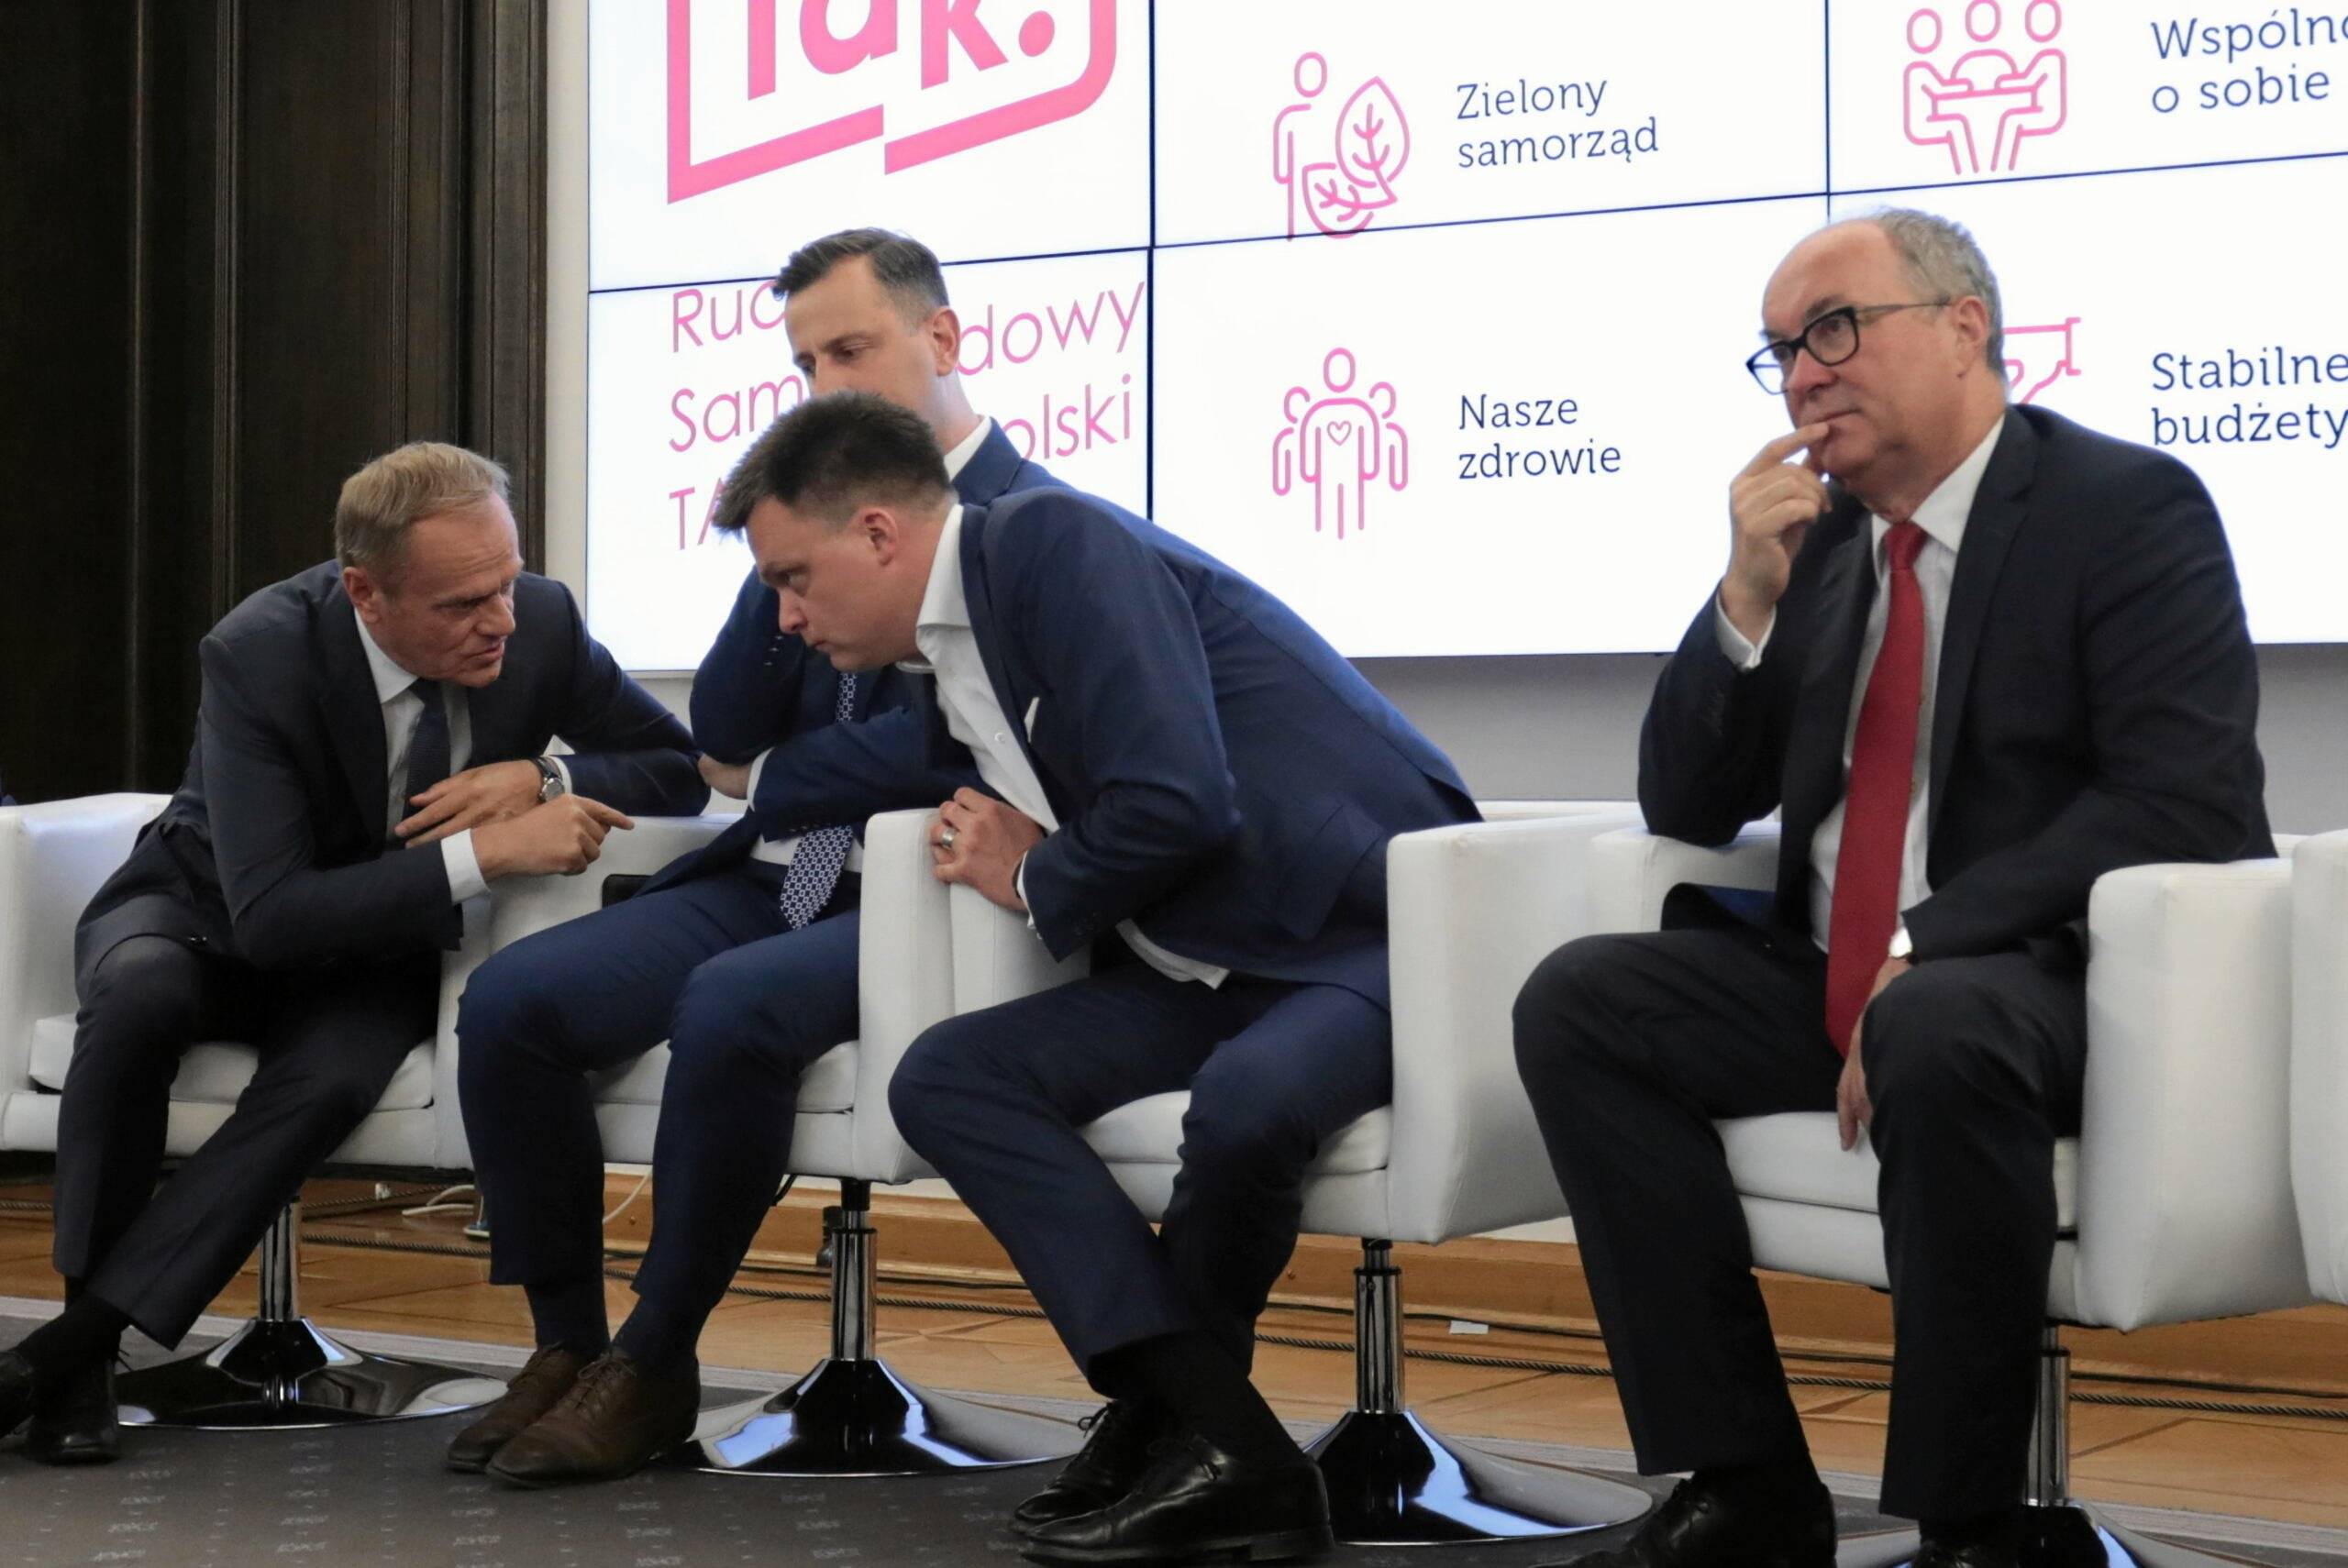 Mężczyźni politycy siedzą na fotelach, od lewej: Tusk, Kosiniak-Kamysz, Hołownia, Czarzasty